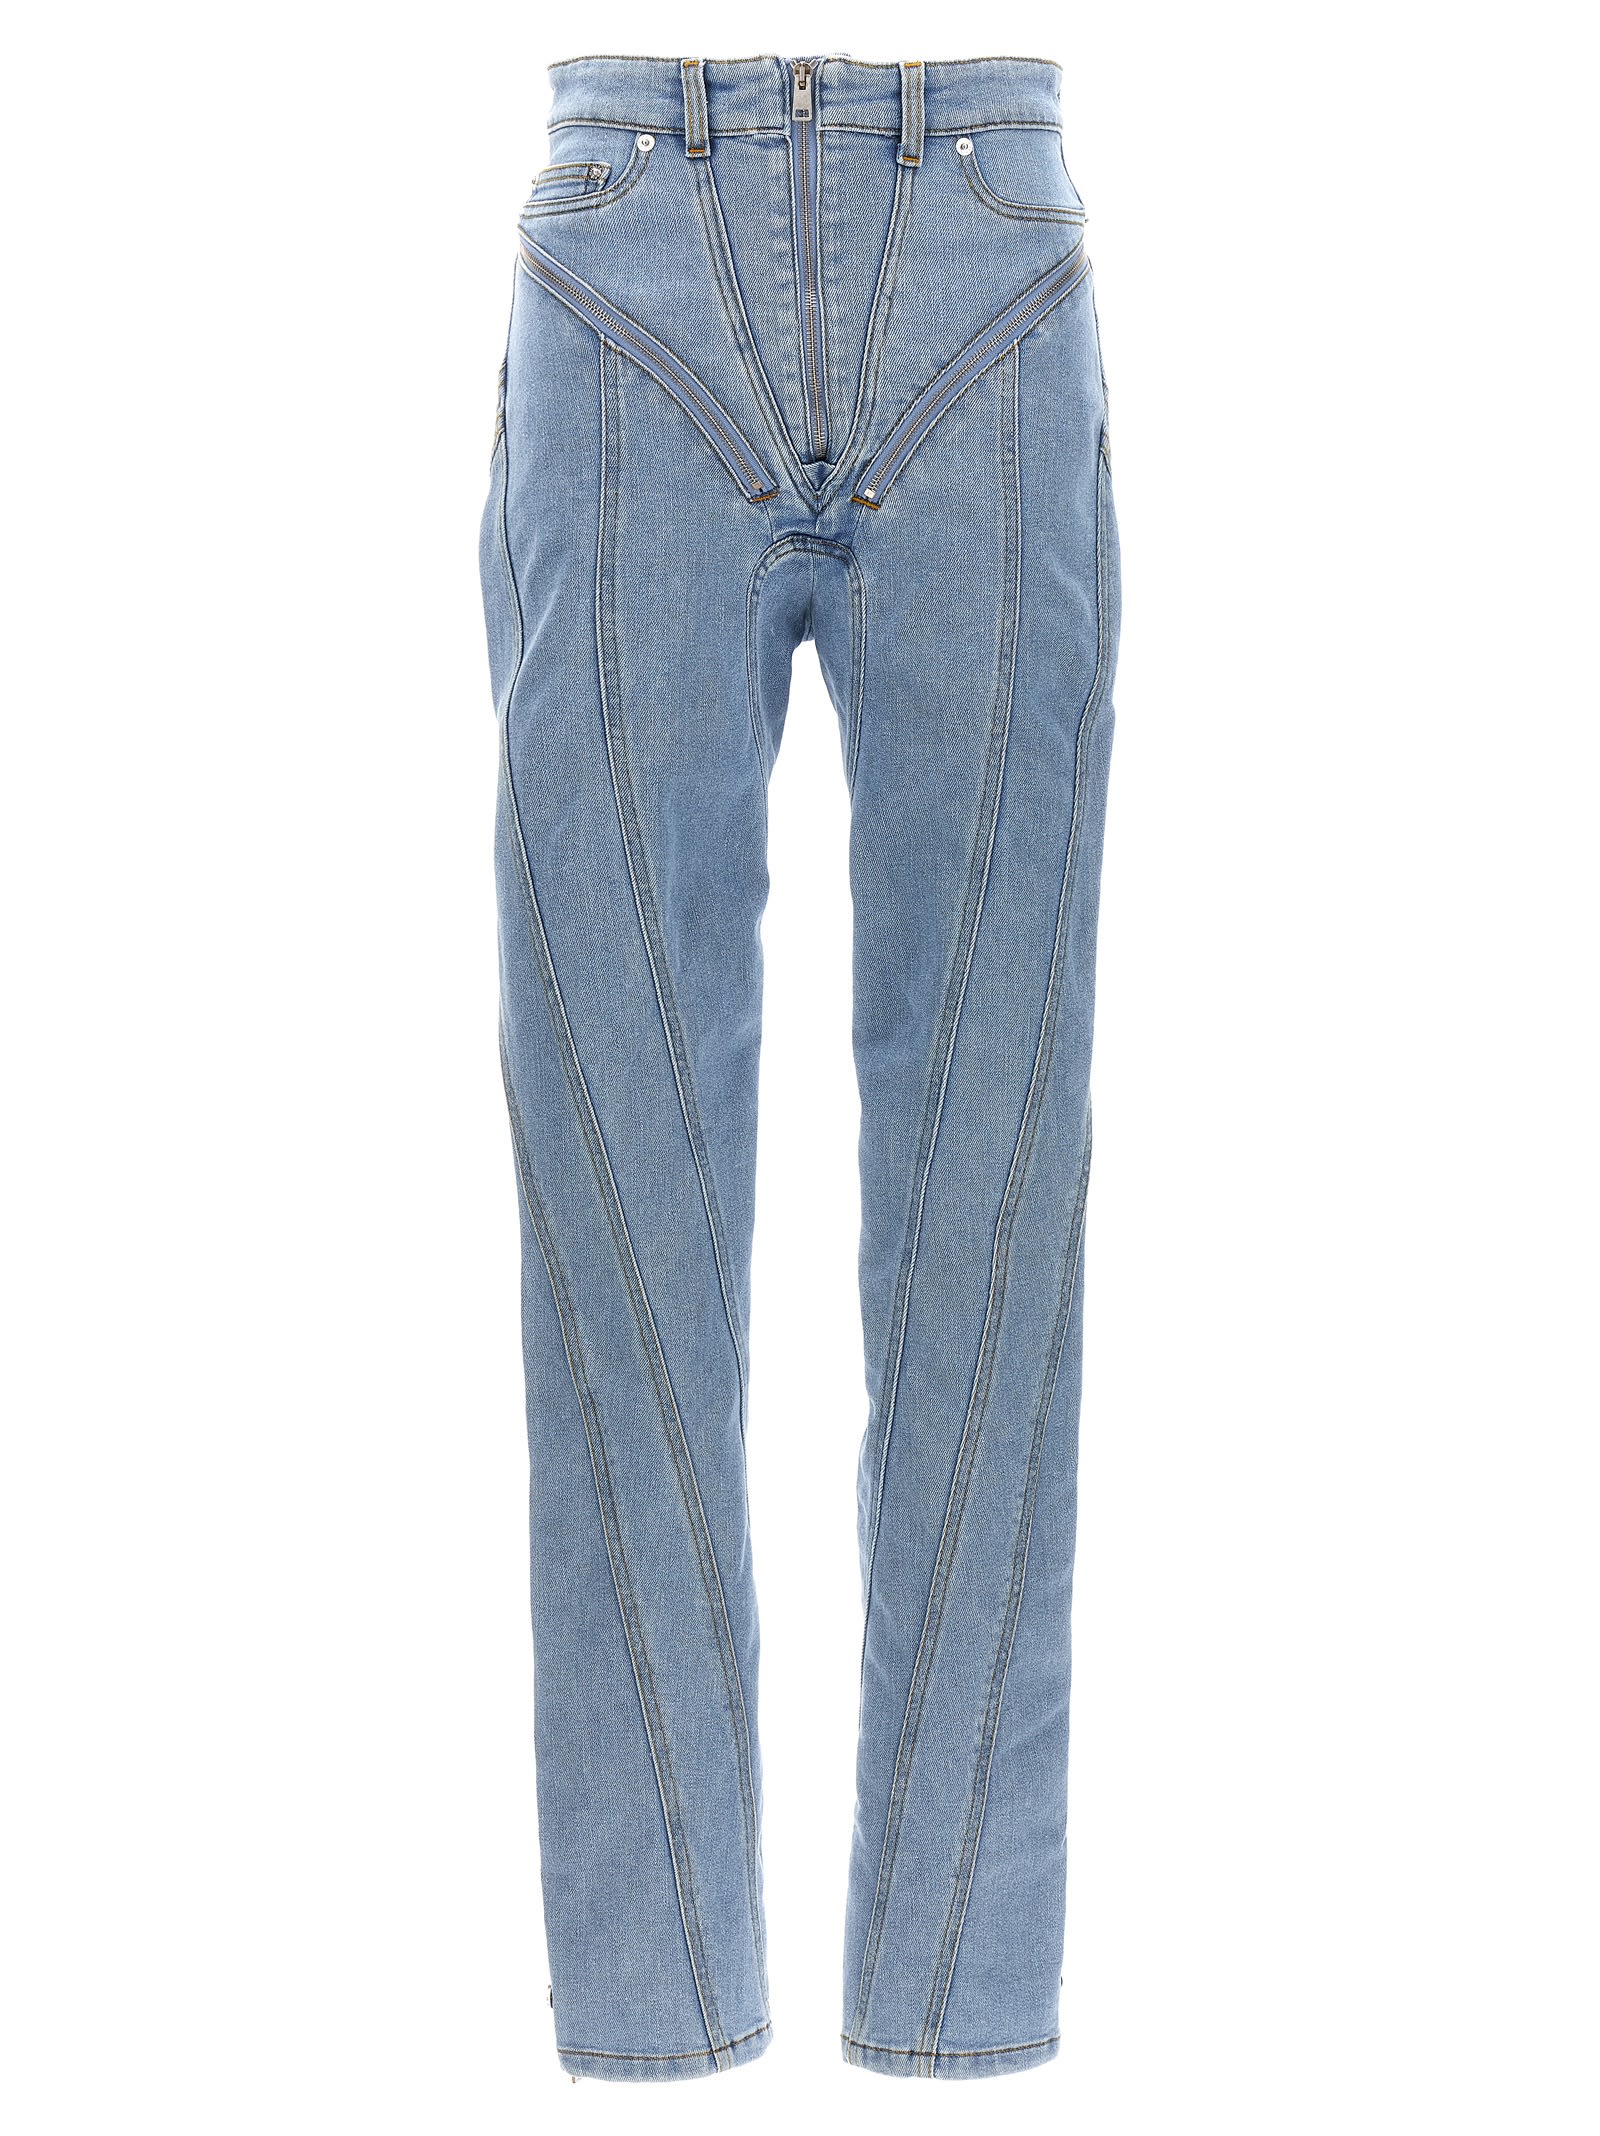 Shop Mugler Zipped Spiral Jeans In Light Blue